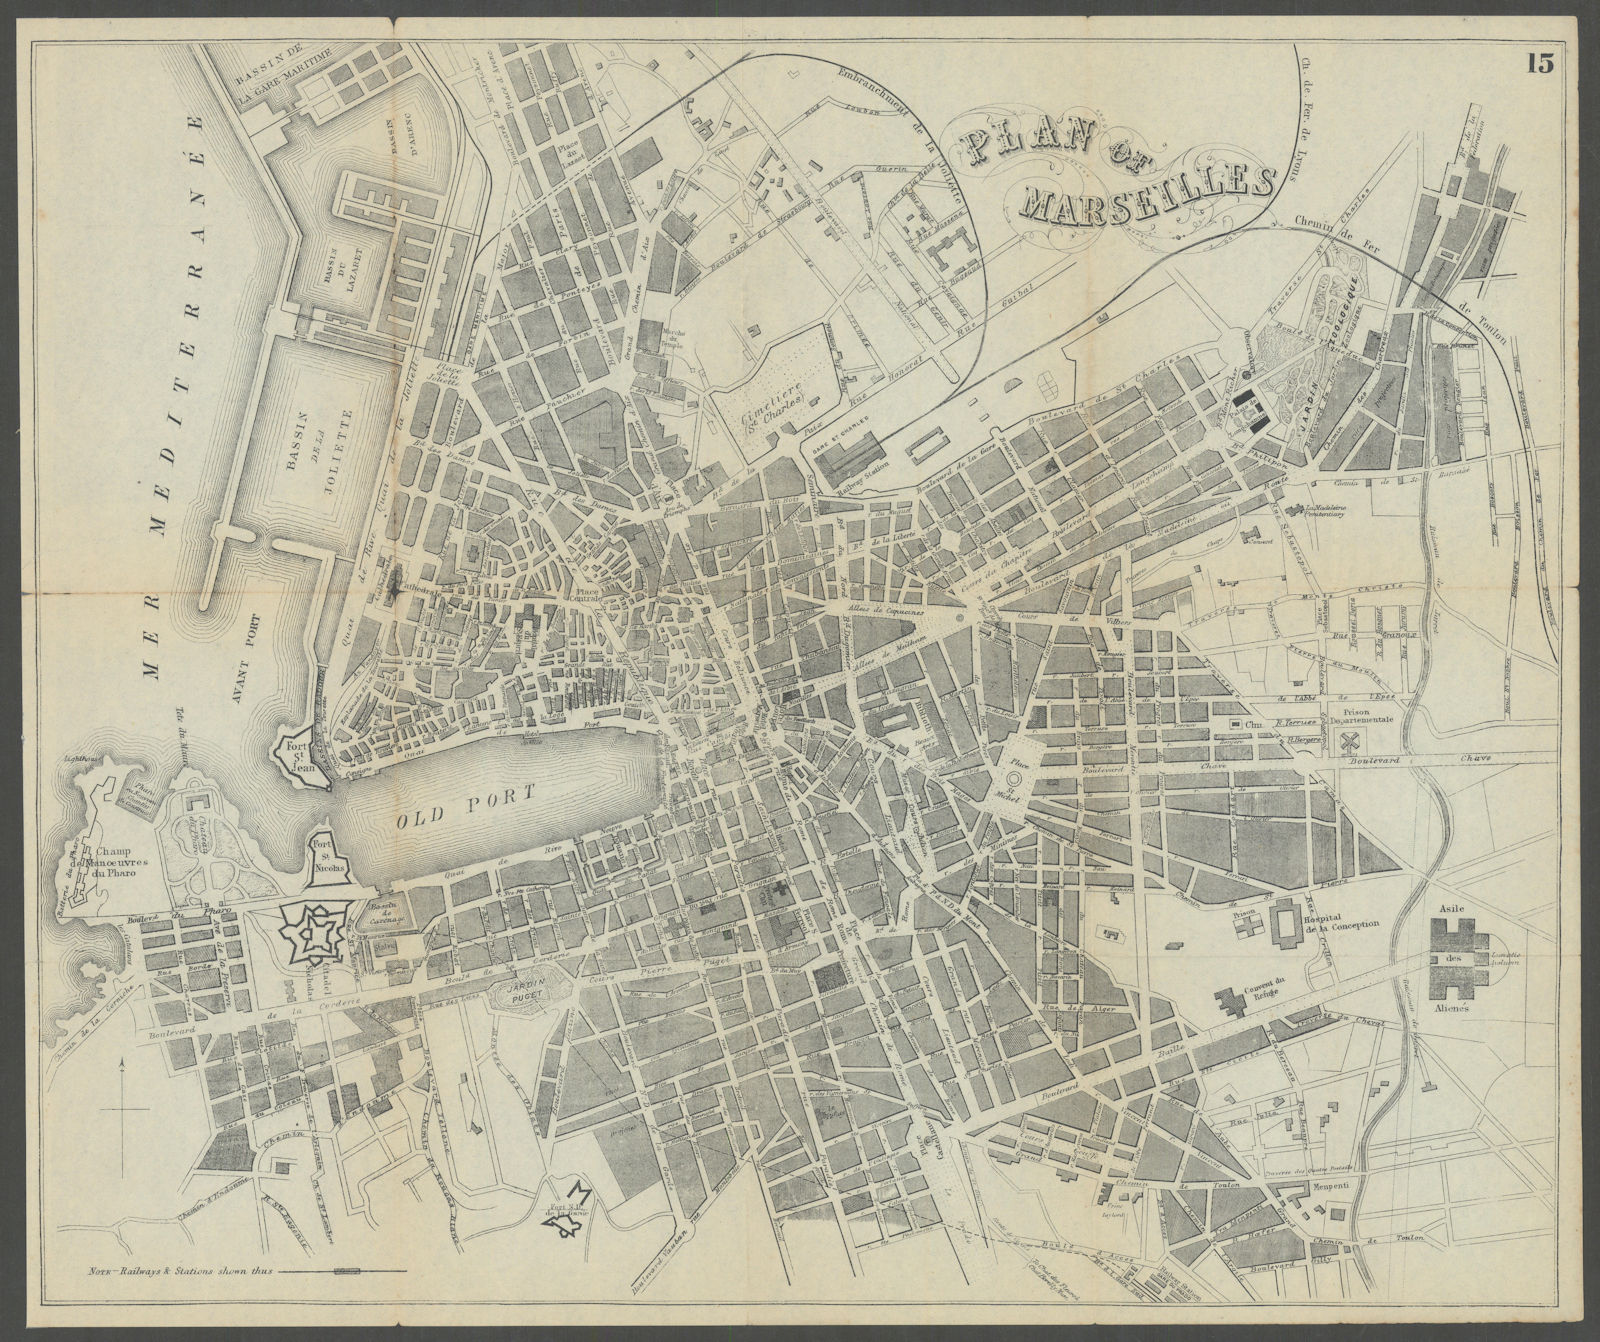 MARSEILLES antique town plan city map. France. BRADSHAW c1899 old